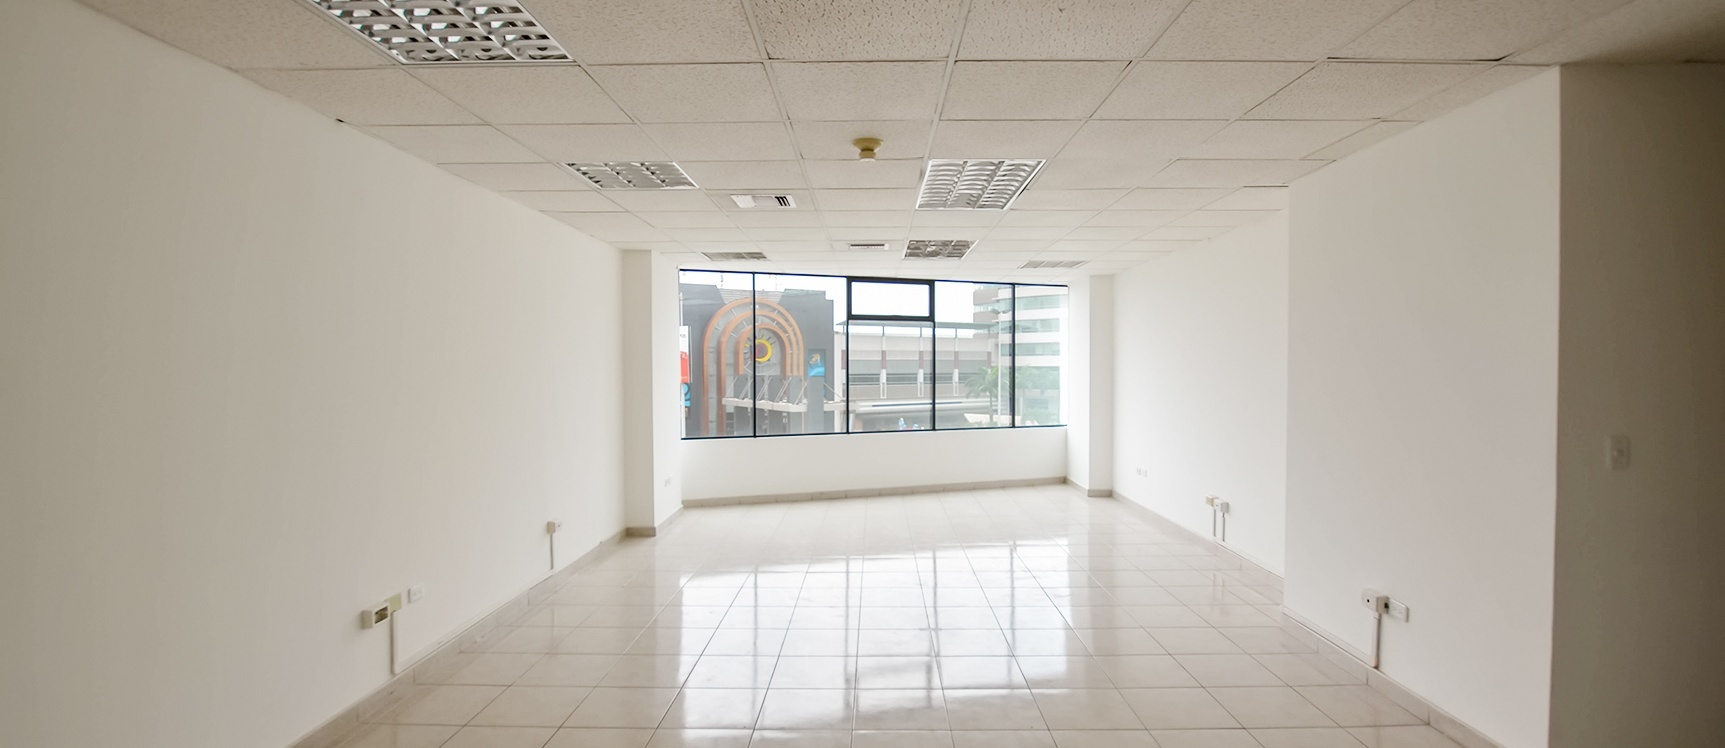 GeoBienes - Oficina en Alquiler Edificio Executive Center Norte de Guayaquil - Plusvalia Guayaquil Casas de venta y alquiler Inmobiliaria Ecuador